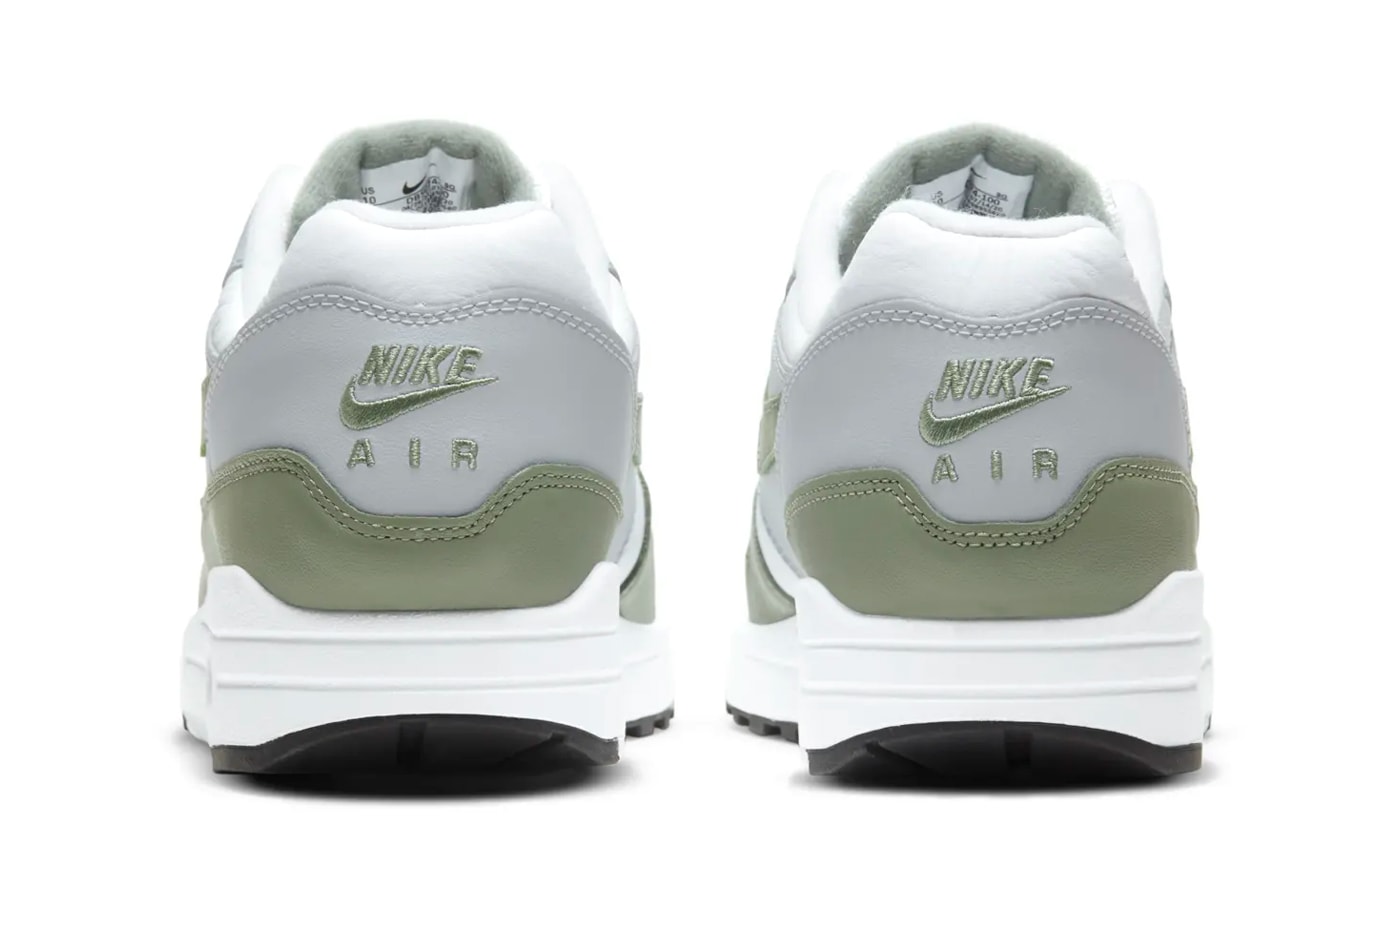 Nike Air Max 1 Spiral Sage DB5074 100 release menswear streetwear footwear shoes sneakers kicks trainers runners info Buy Date Price